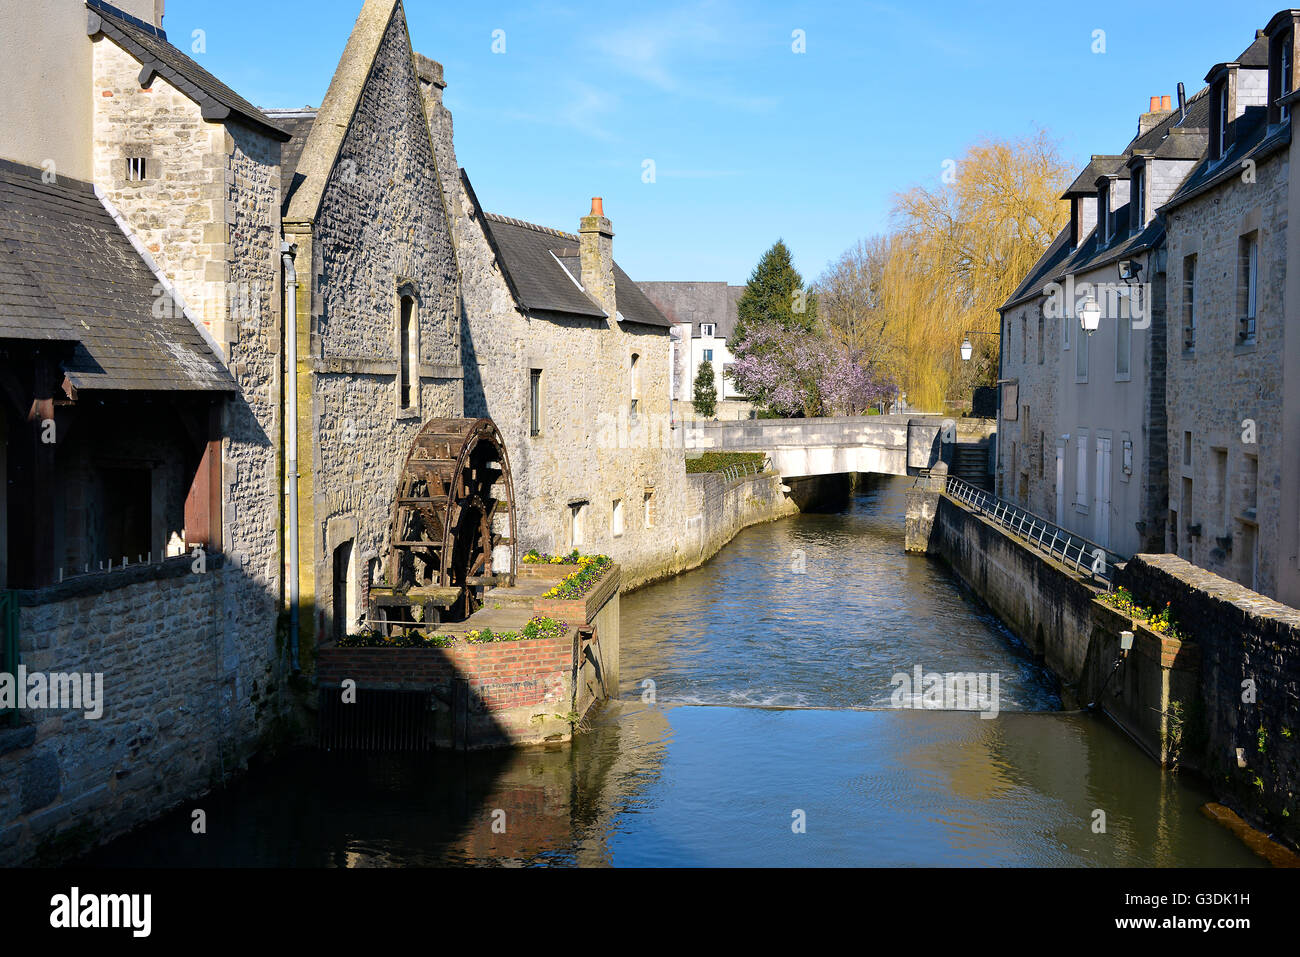 River dans l'Aure ville de Bayeux, une commune française, située dans le département de la Normandie, dans le nord-ouest de la France Banque D'Images